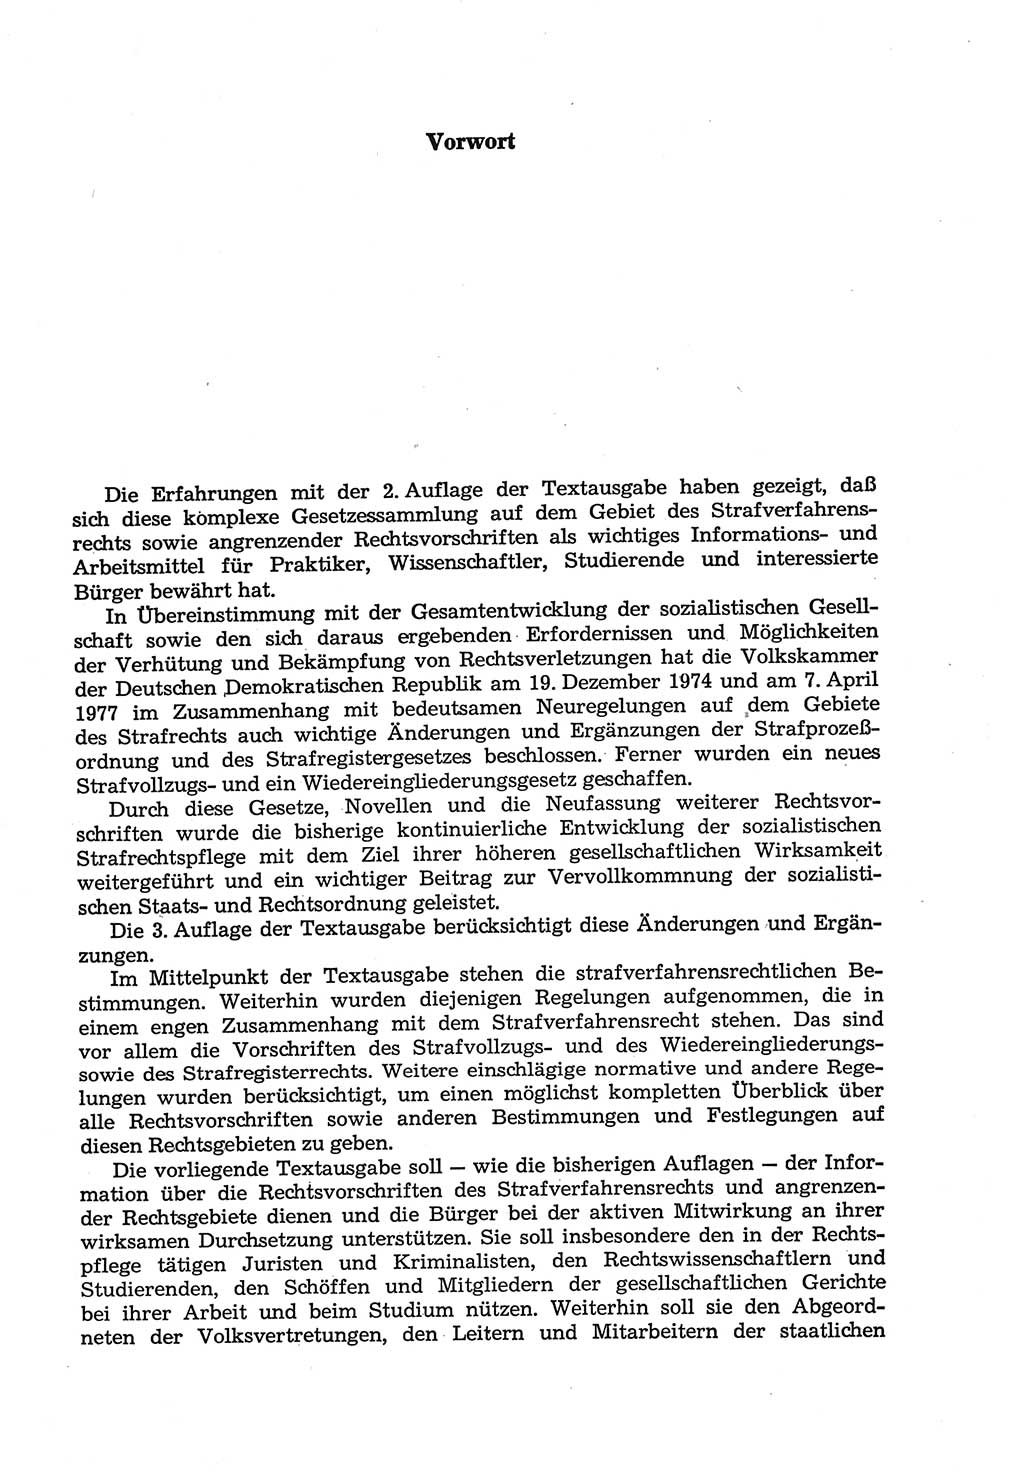 Strafprozeßordnung (StPO) der Deutschen Demokratischen Republik (DDR) sowie angrenzende Gesetze und Bestimmungen 1977, Seite 3 (StPO DDR Ges. Best. 1977, S. 3)